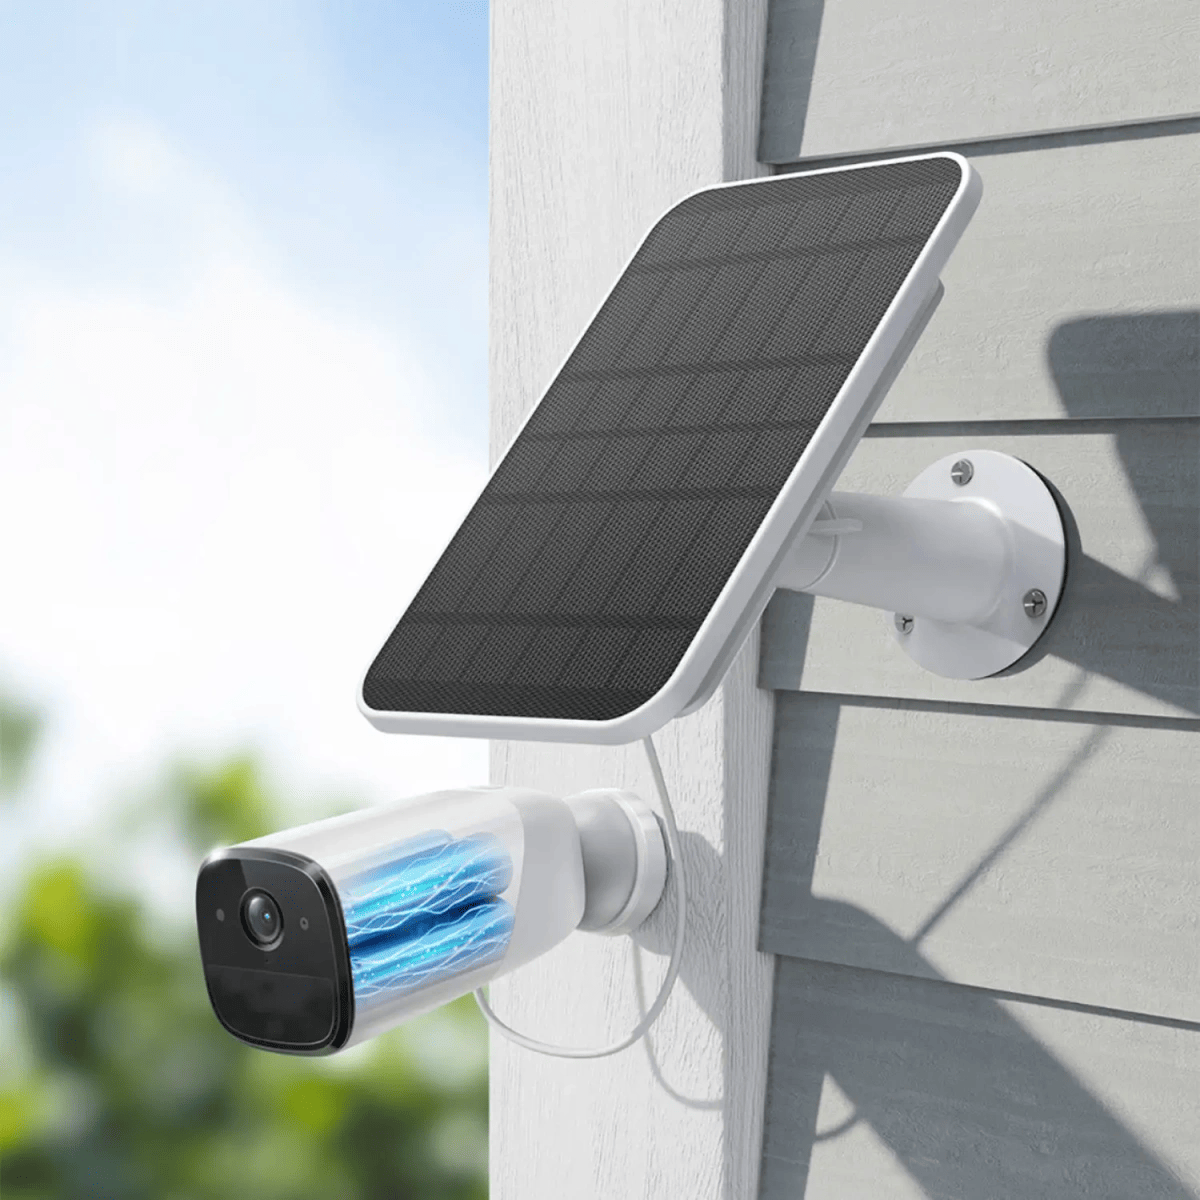 佳信捷太阳能摄像机解决室外监控问题